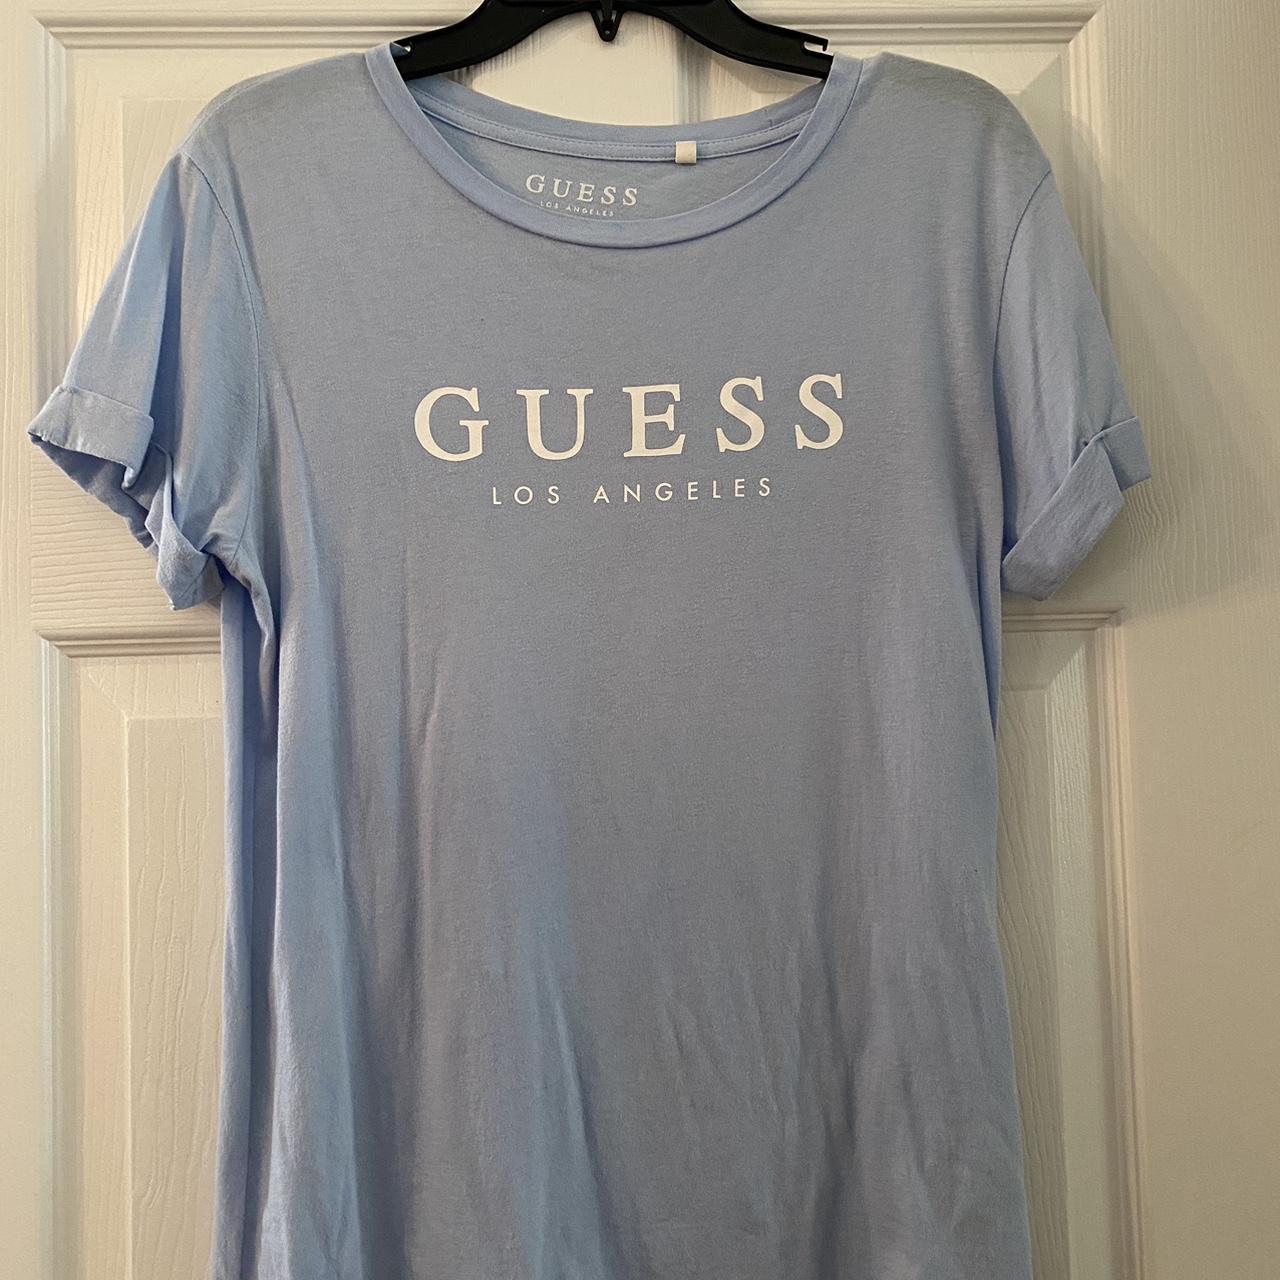 Guess Women's Blue T-shirt | Depop